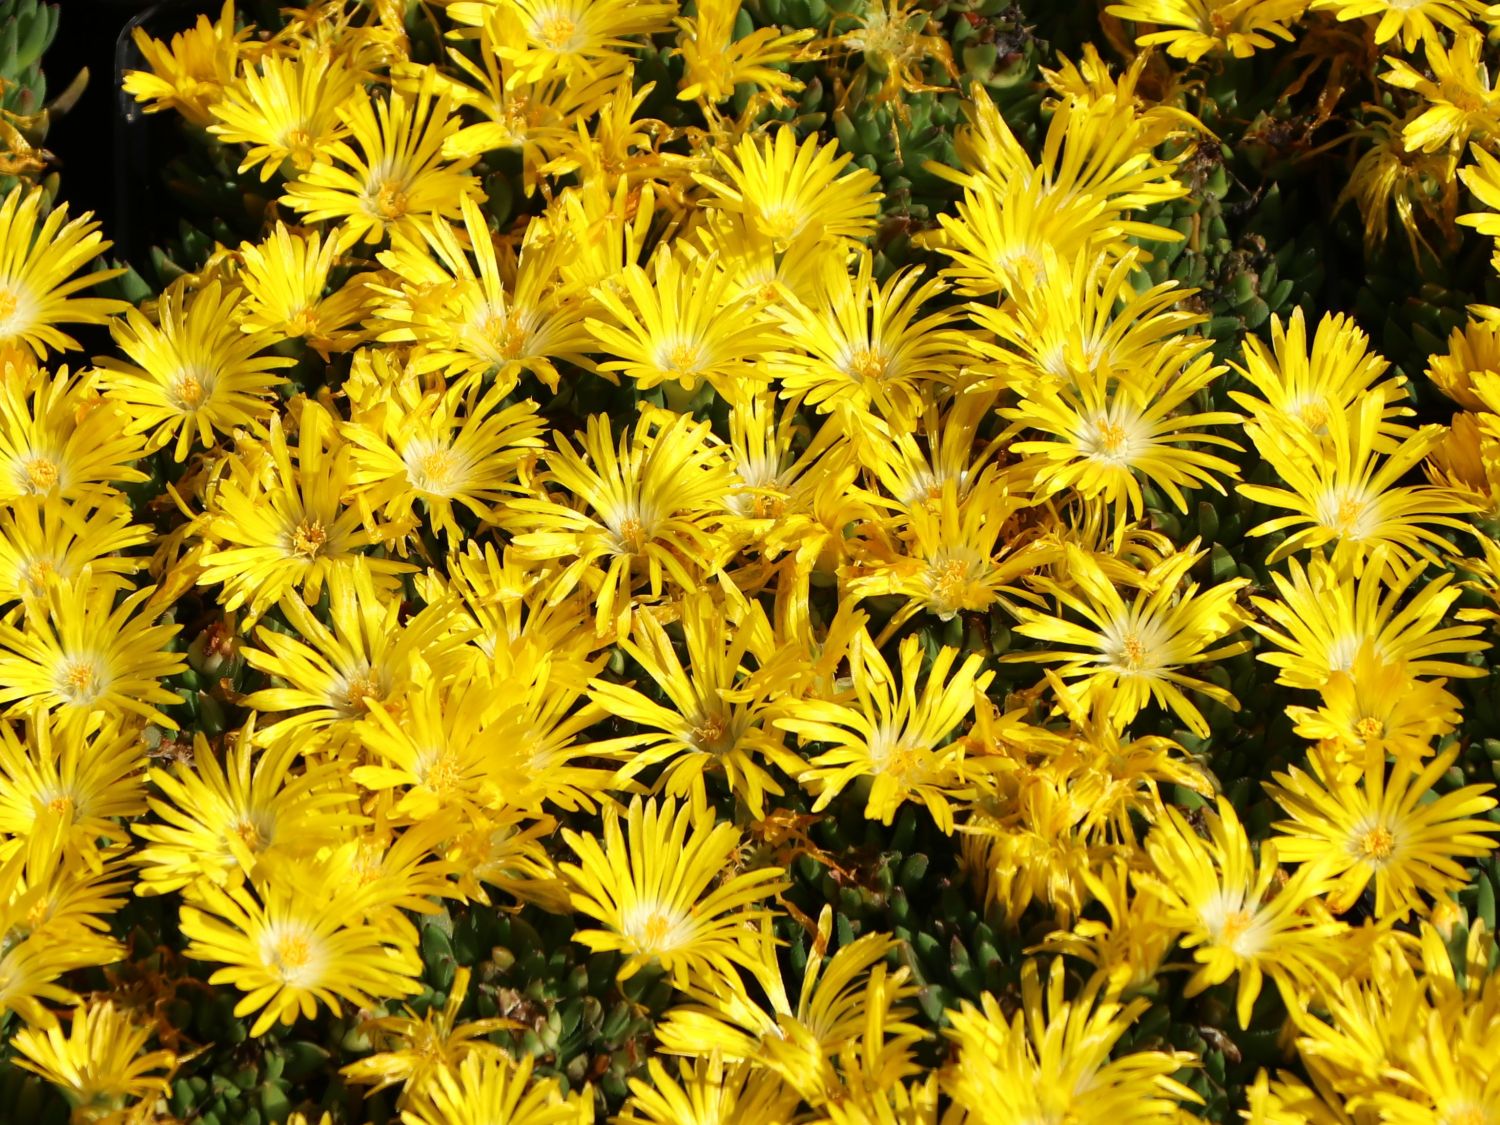 DelospermaGRAAF REINET 1 x Staude Pflanze Mittagsblümchen